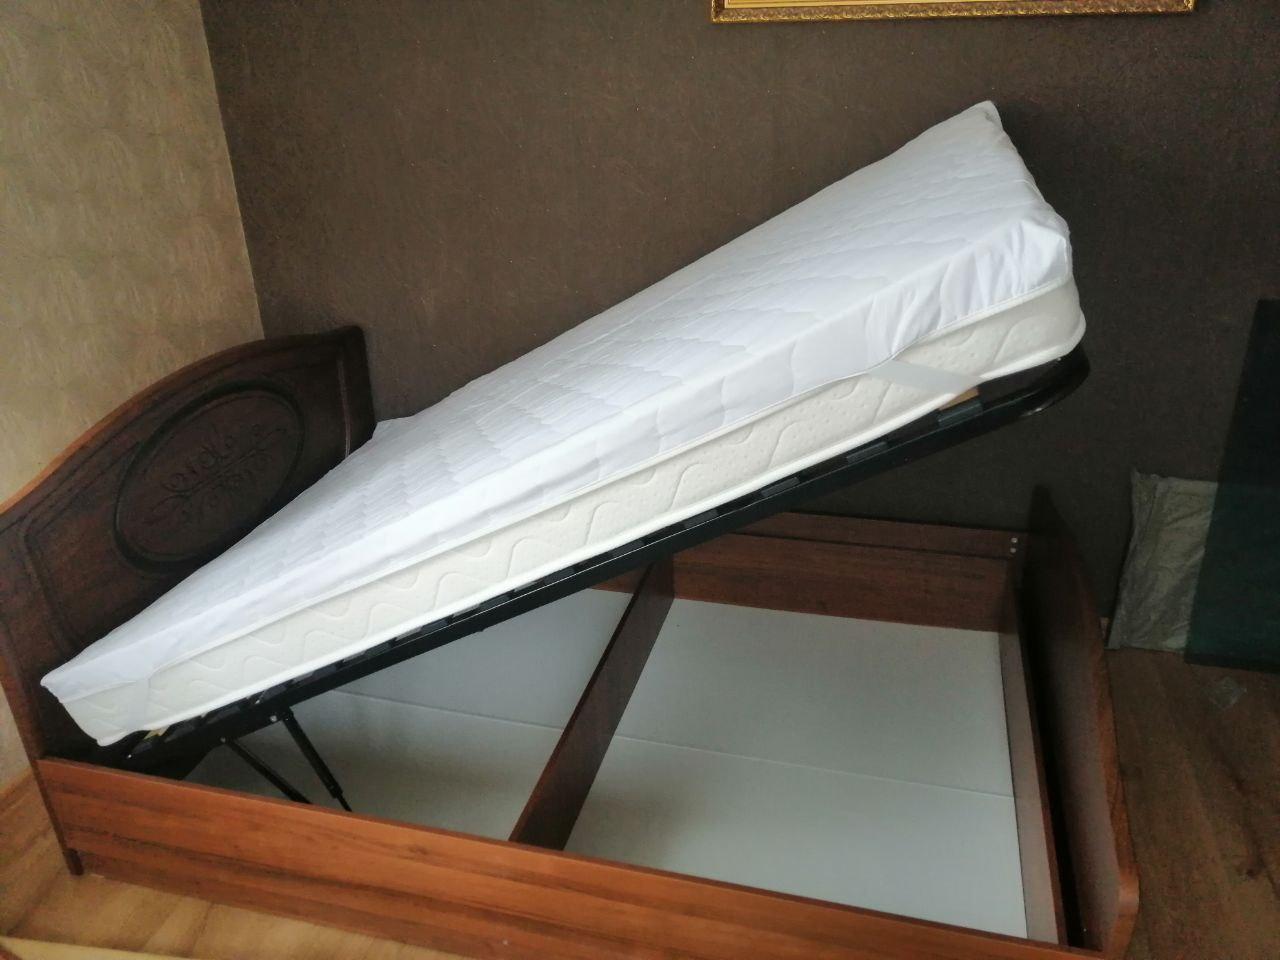 Полутораспальная кровать "Натали" 120 х 190 с подъемным мех-ом цвет клен/ясень беж-й изножье высокое